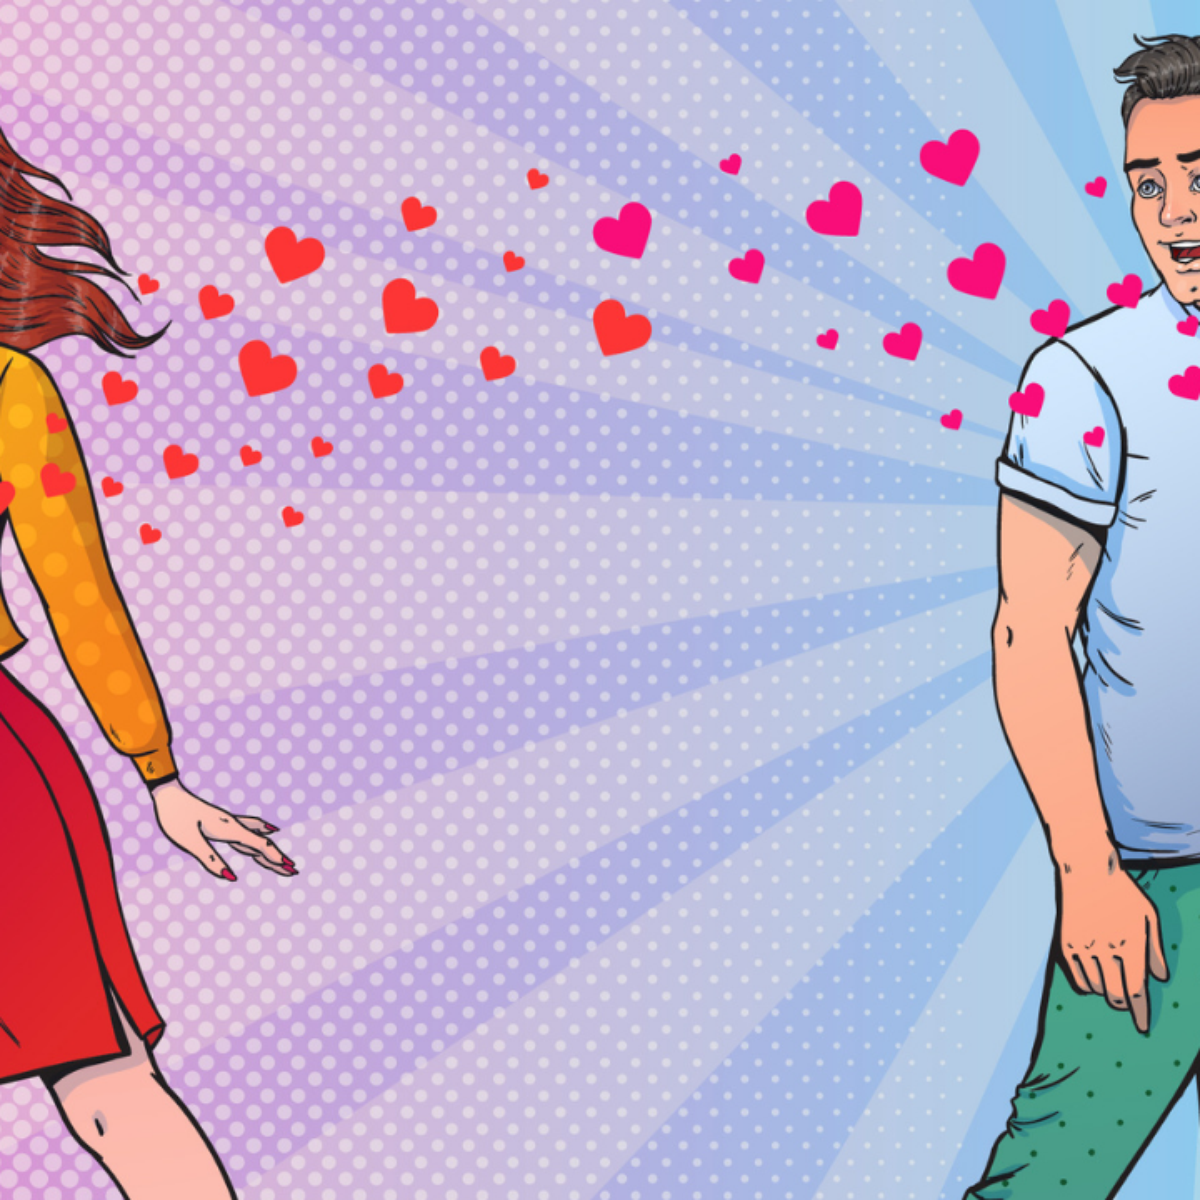 36 perguntas para se apaixonar: o questionário do amor criado pela